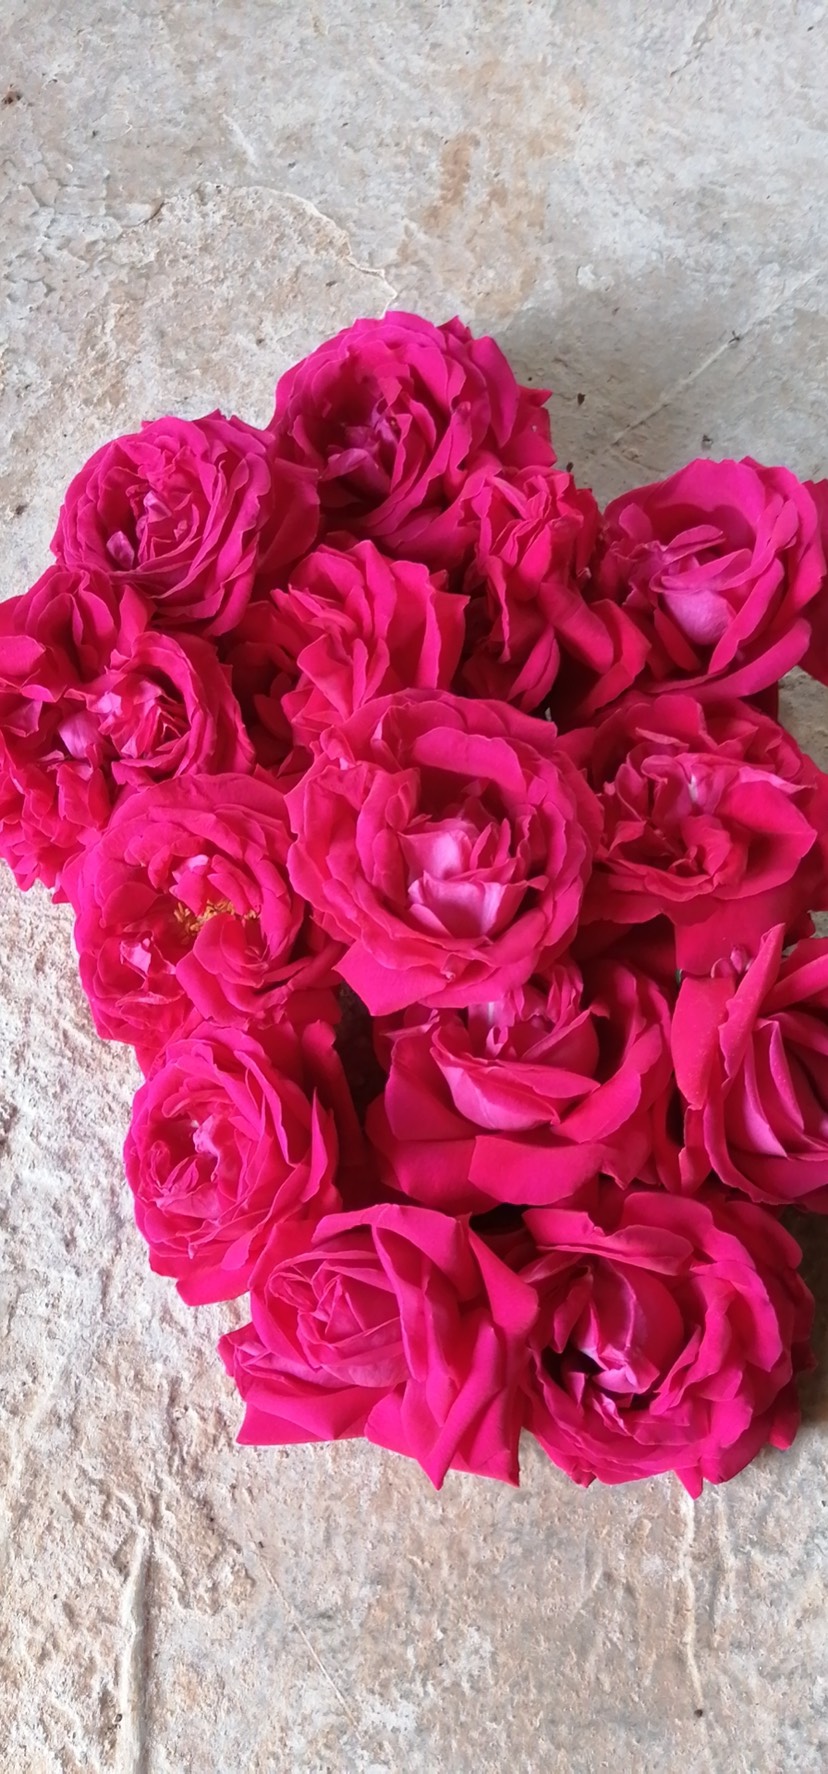 云南滇红玫瑰食用玫瑰礼品鲜花新鲜滇红玫瑰花原生滇红玫瑰